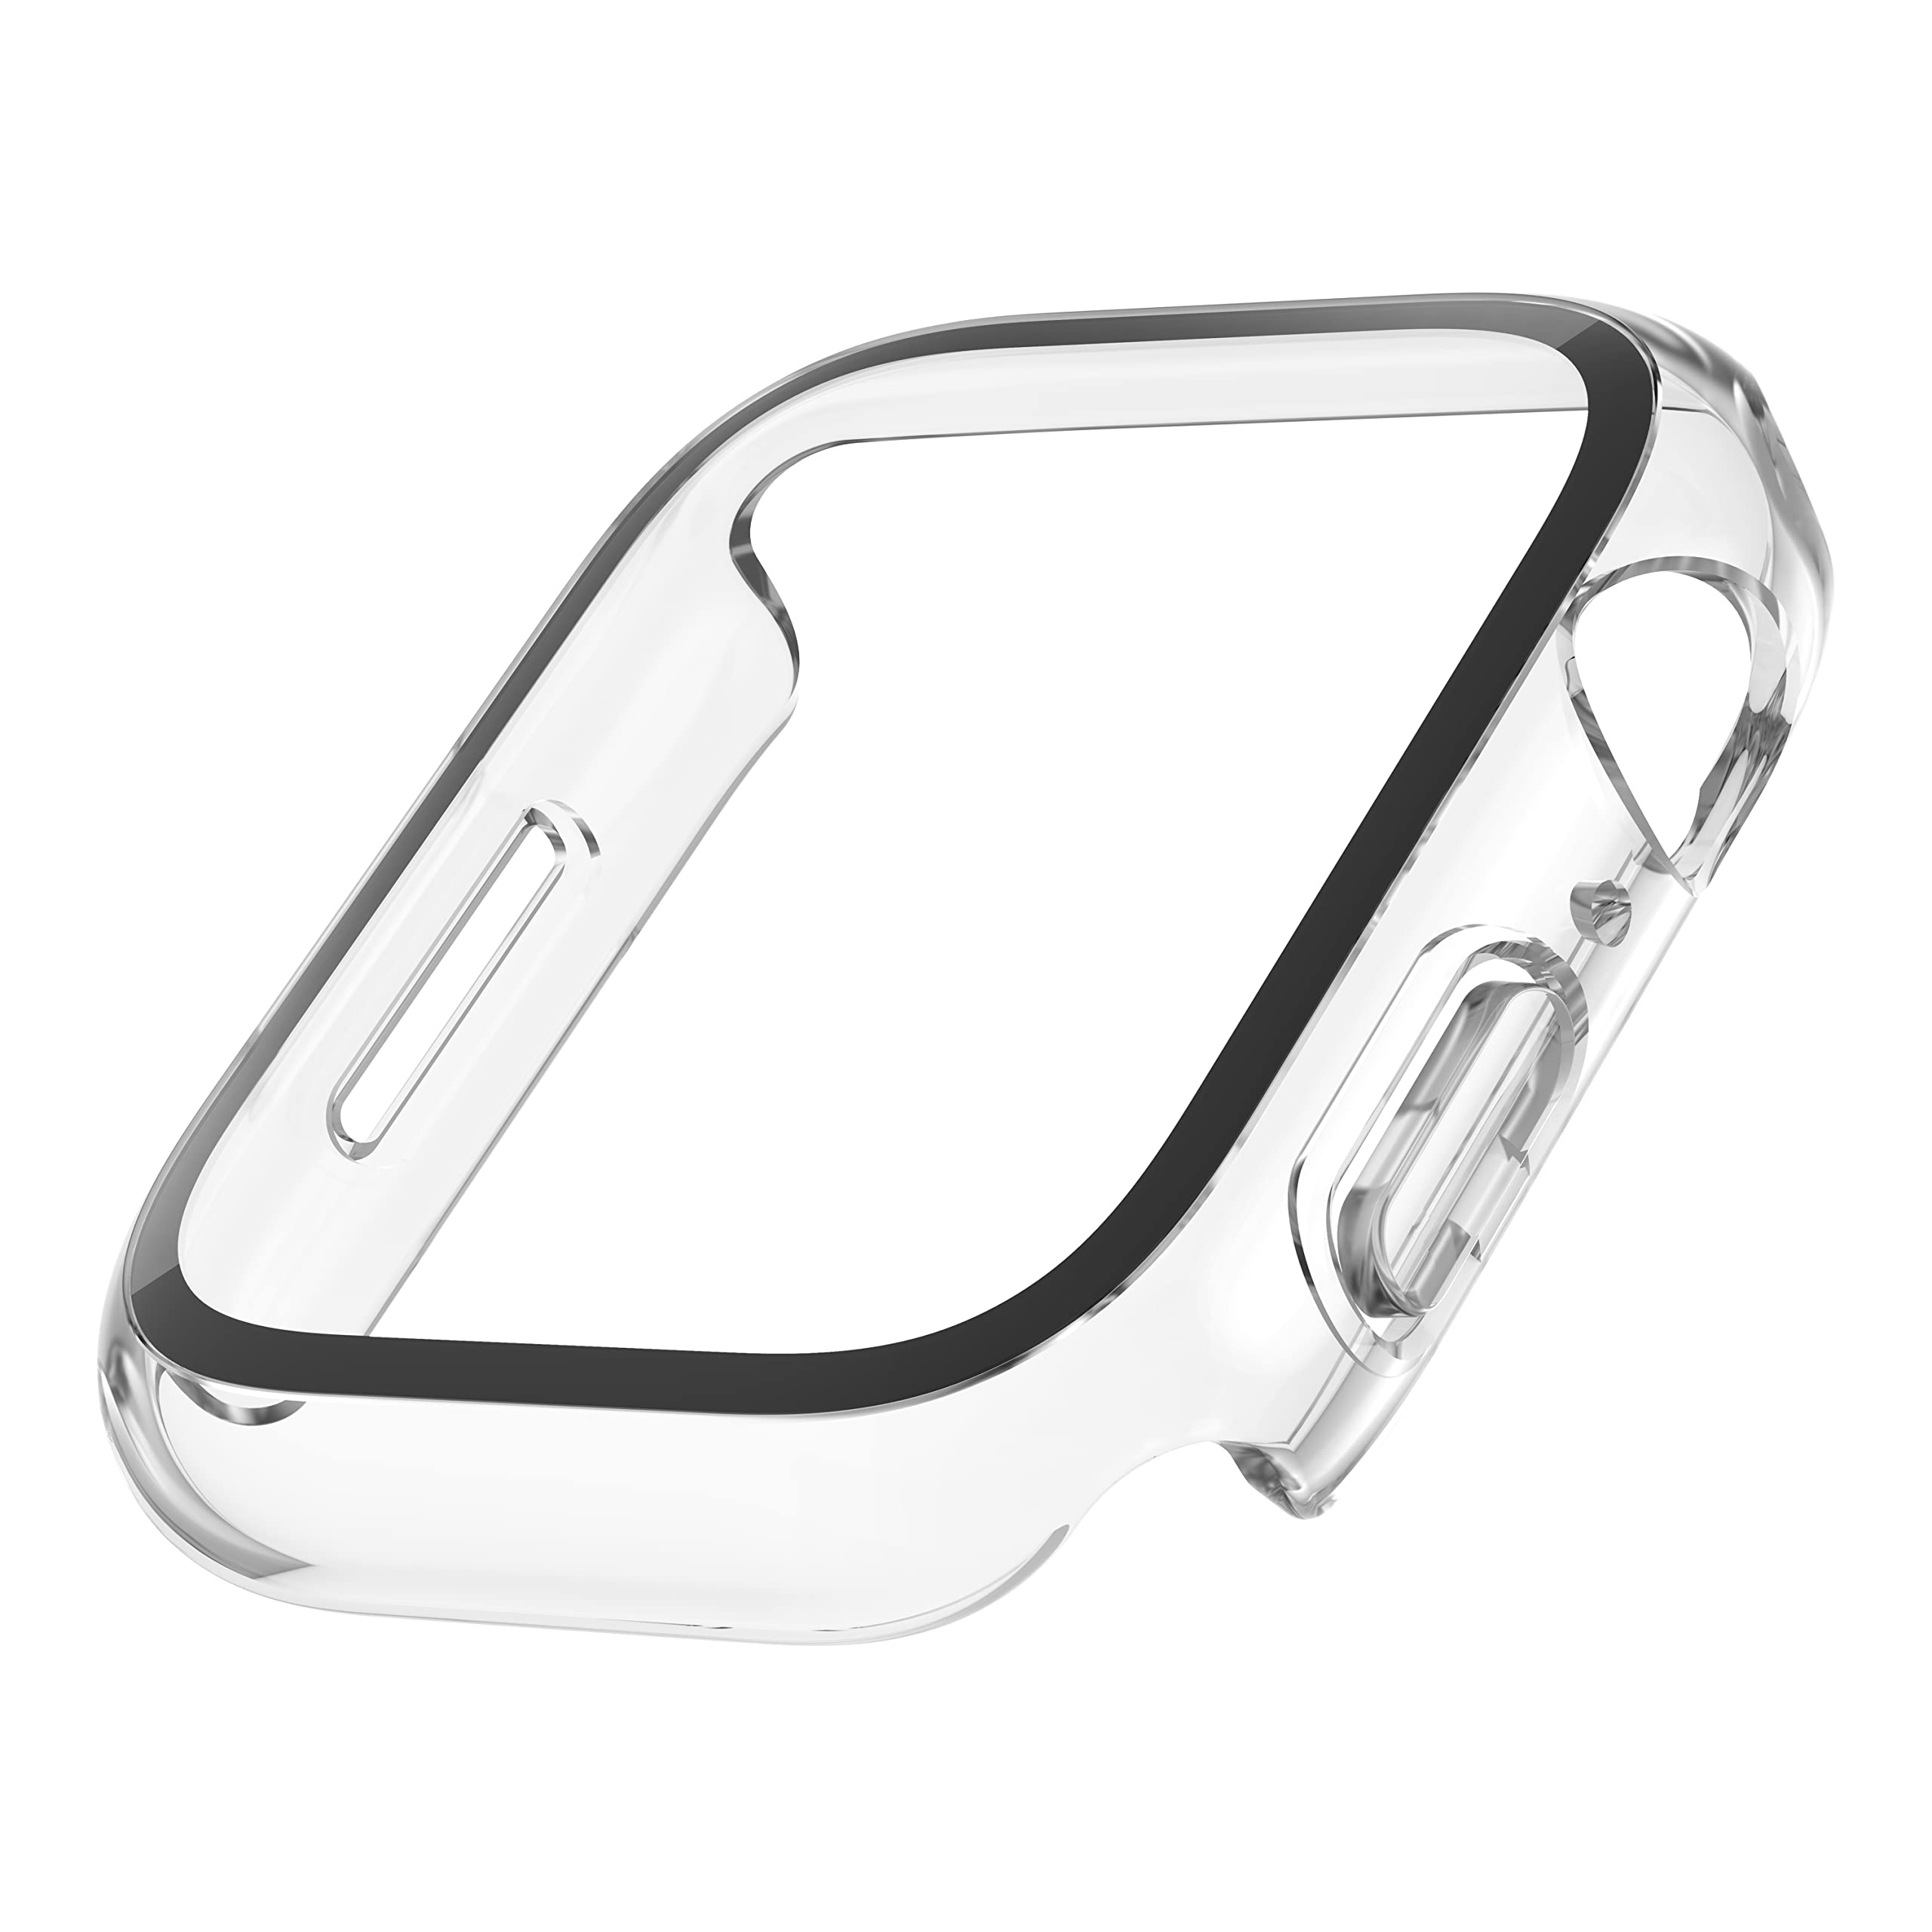 Protector de pantalla antirreflejos de Belkin para el iPhone SE